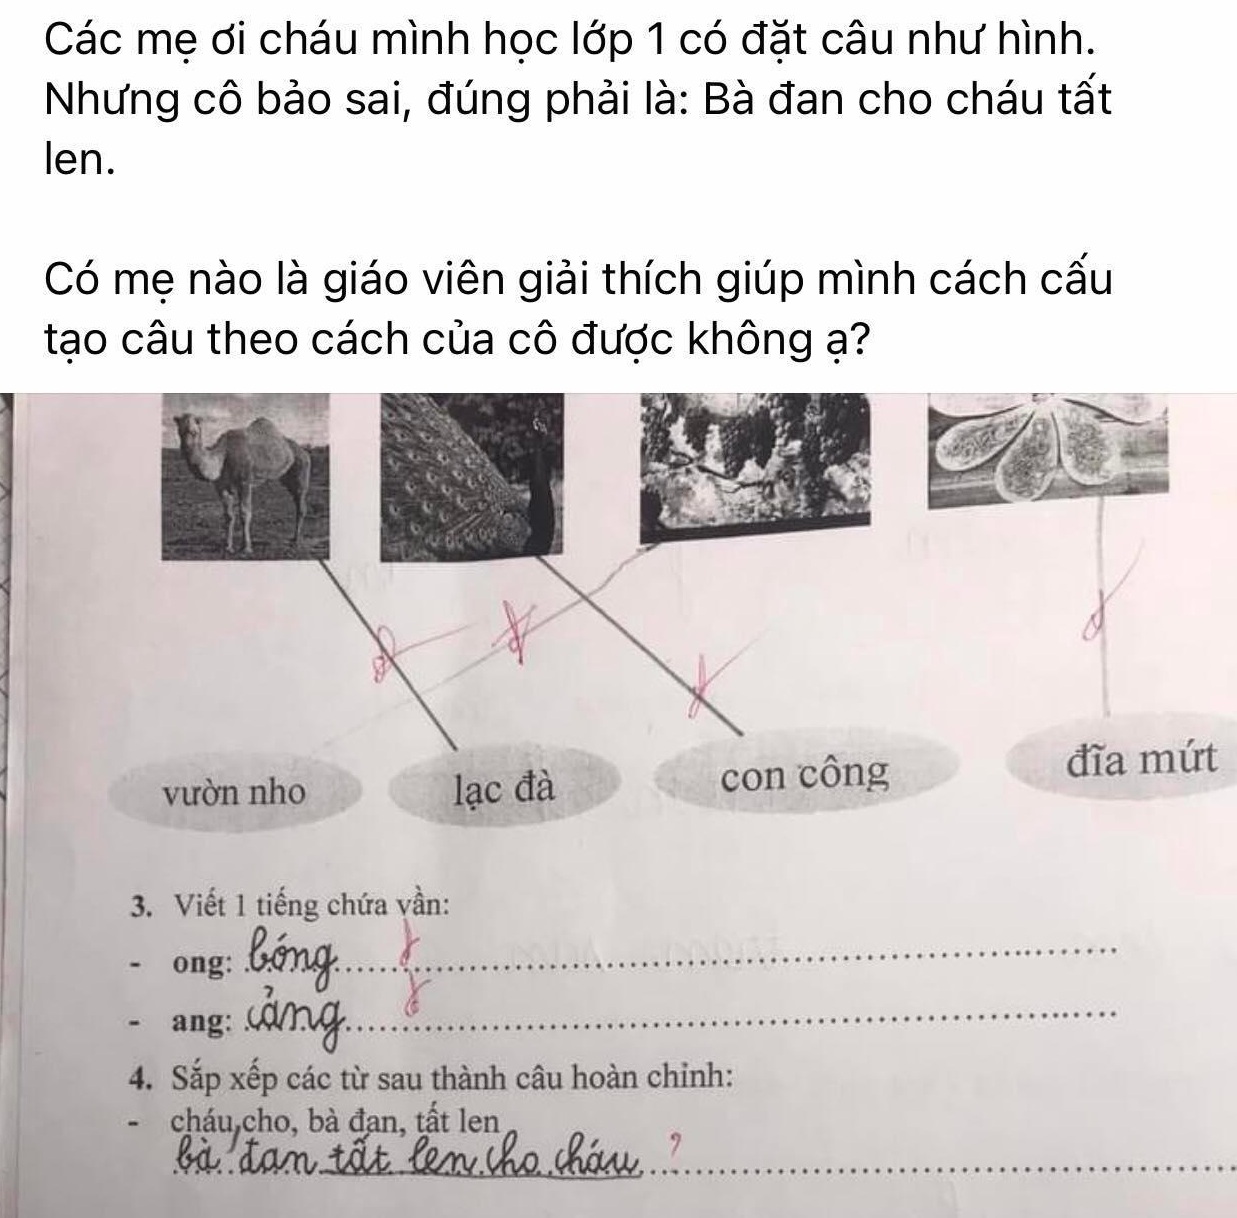 Giáo dục pháp luật - Tưởng bài tập tiếng Việt lớp 1 đơn giản, đáp án của giáo viên khiến phụ huynh hoang mang